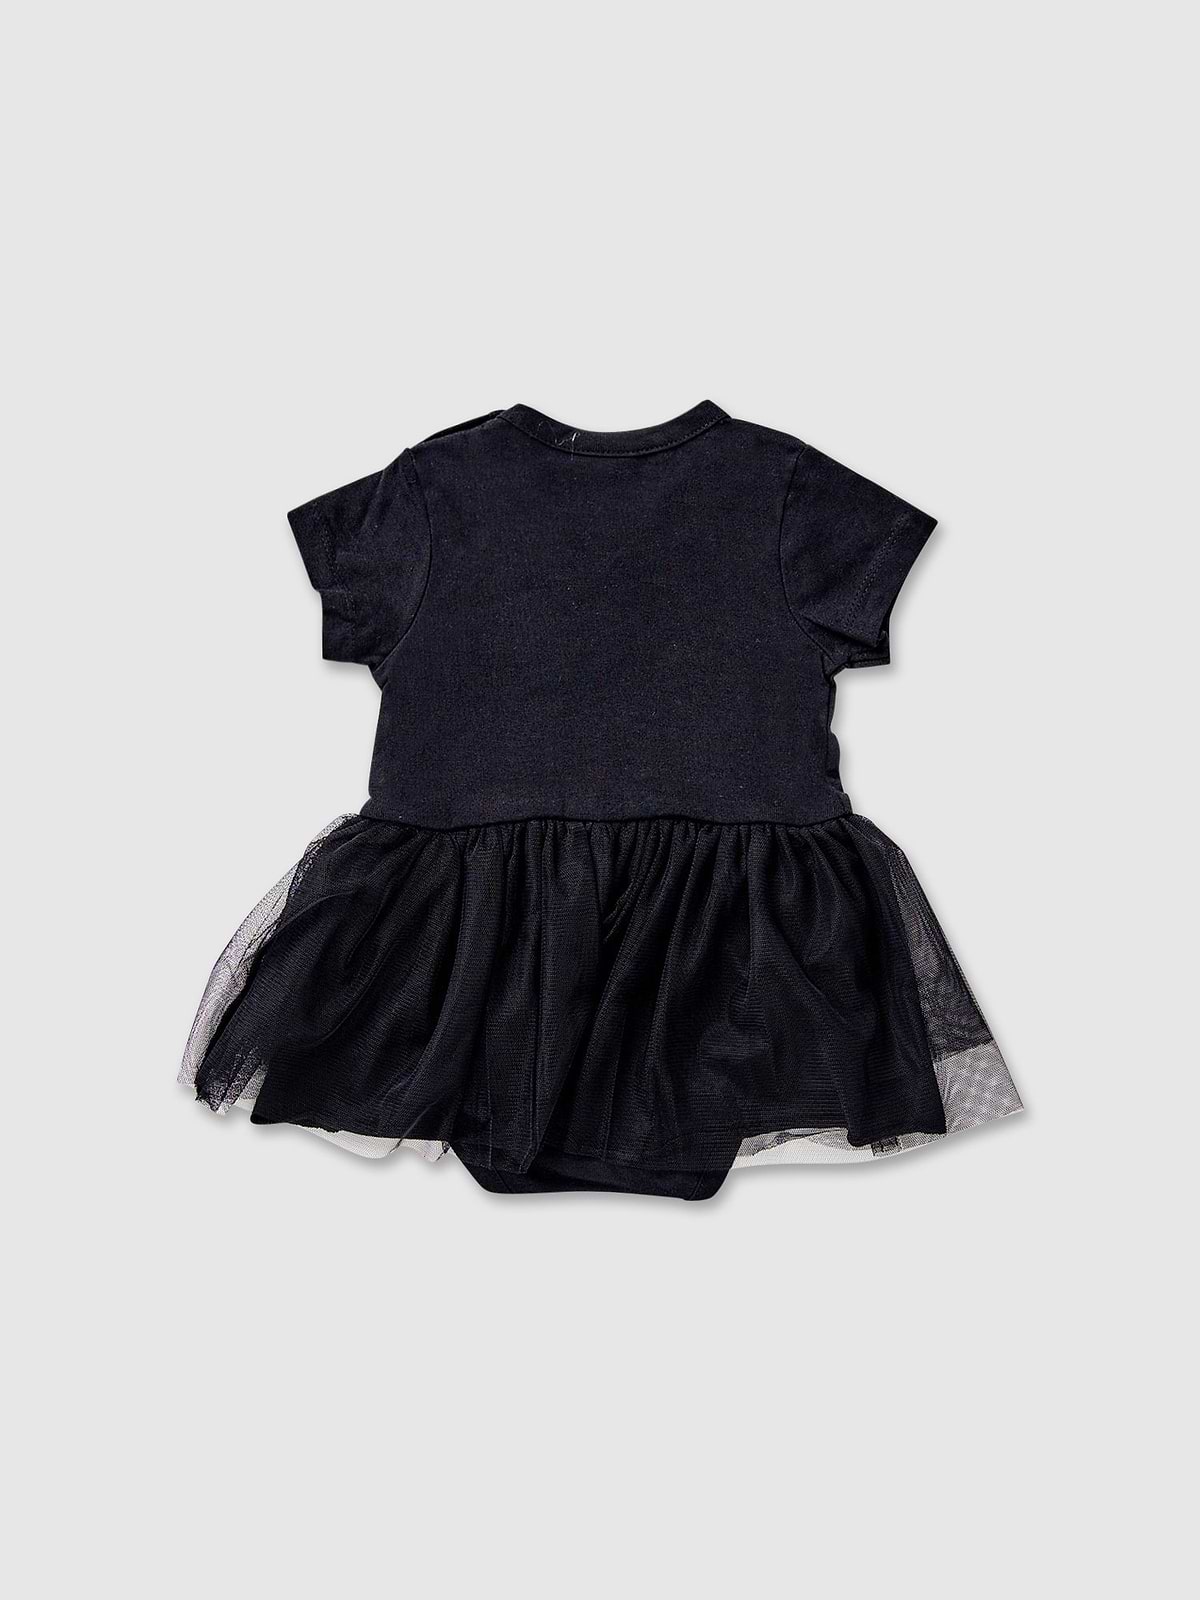 שמלה בשילוב בגד גוף / תינוקות